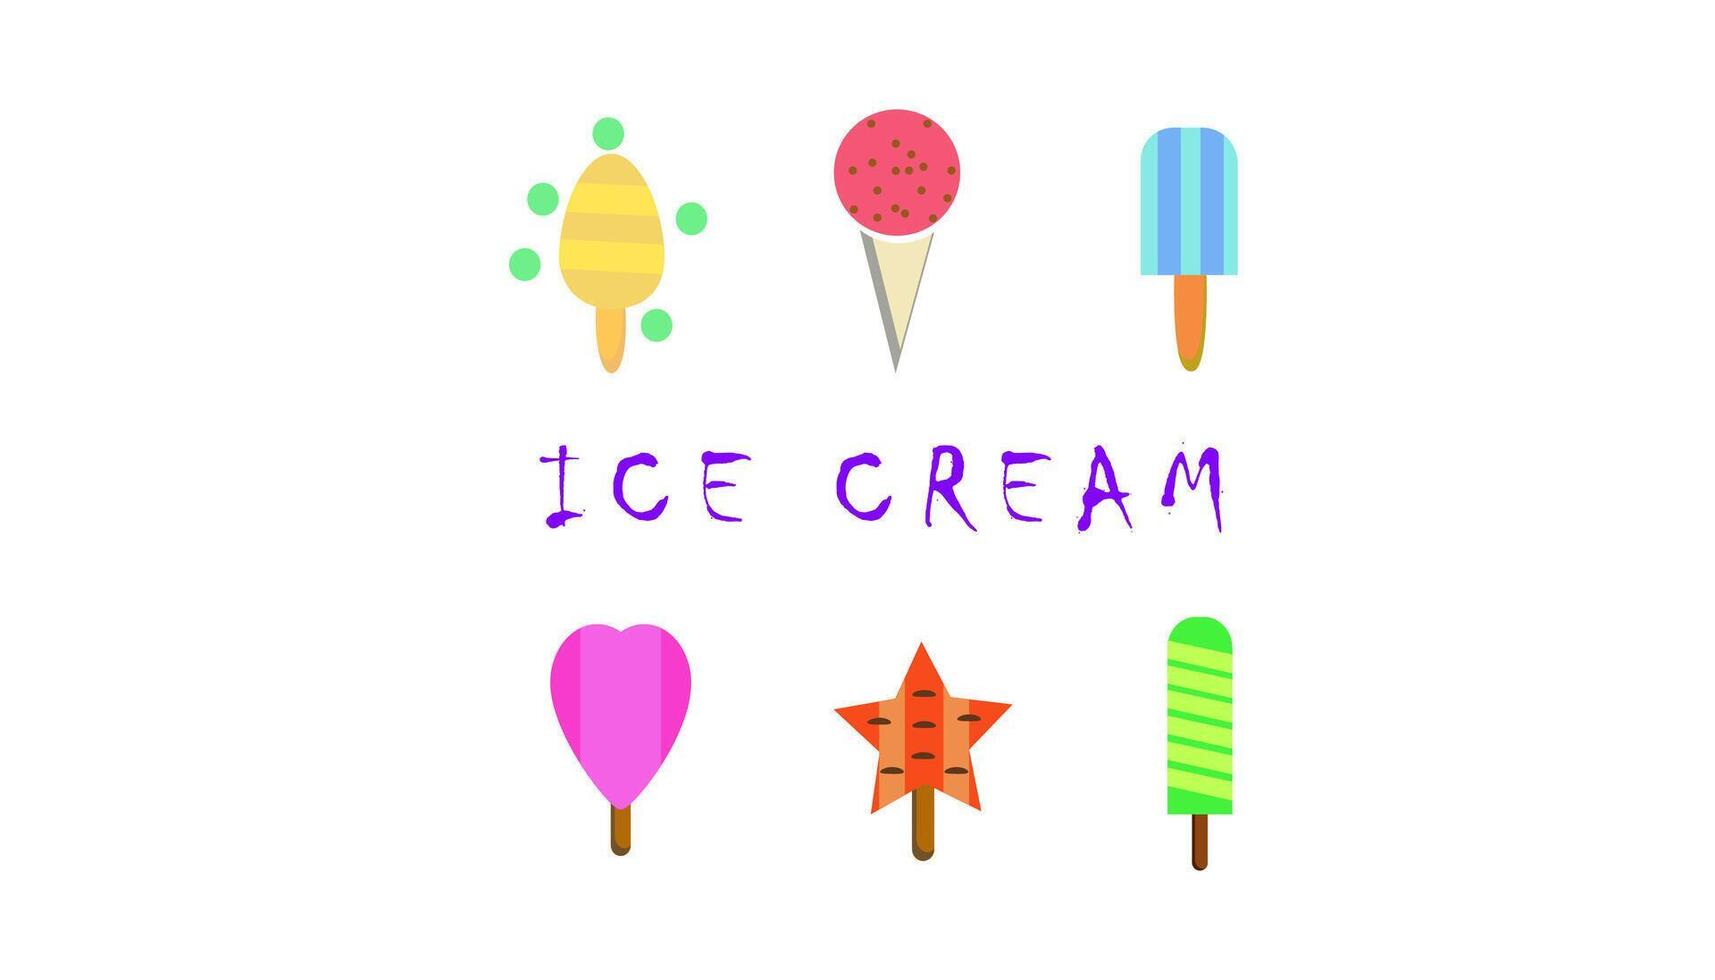 ghiaccio crema emblema, ghiaccio crema logo, semplice e minimalista. vettore